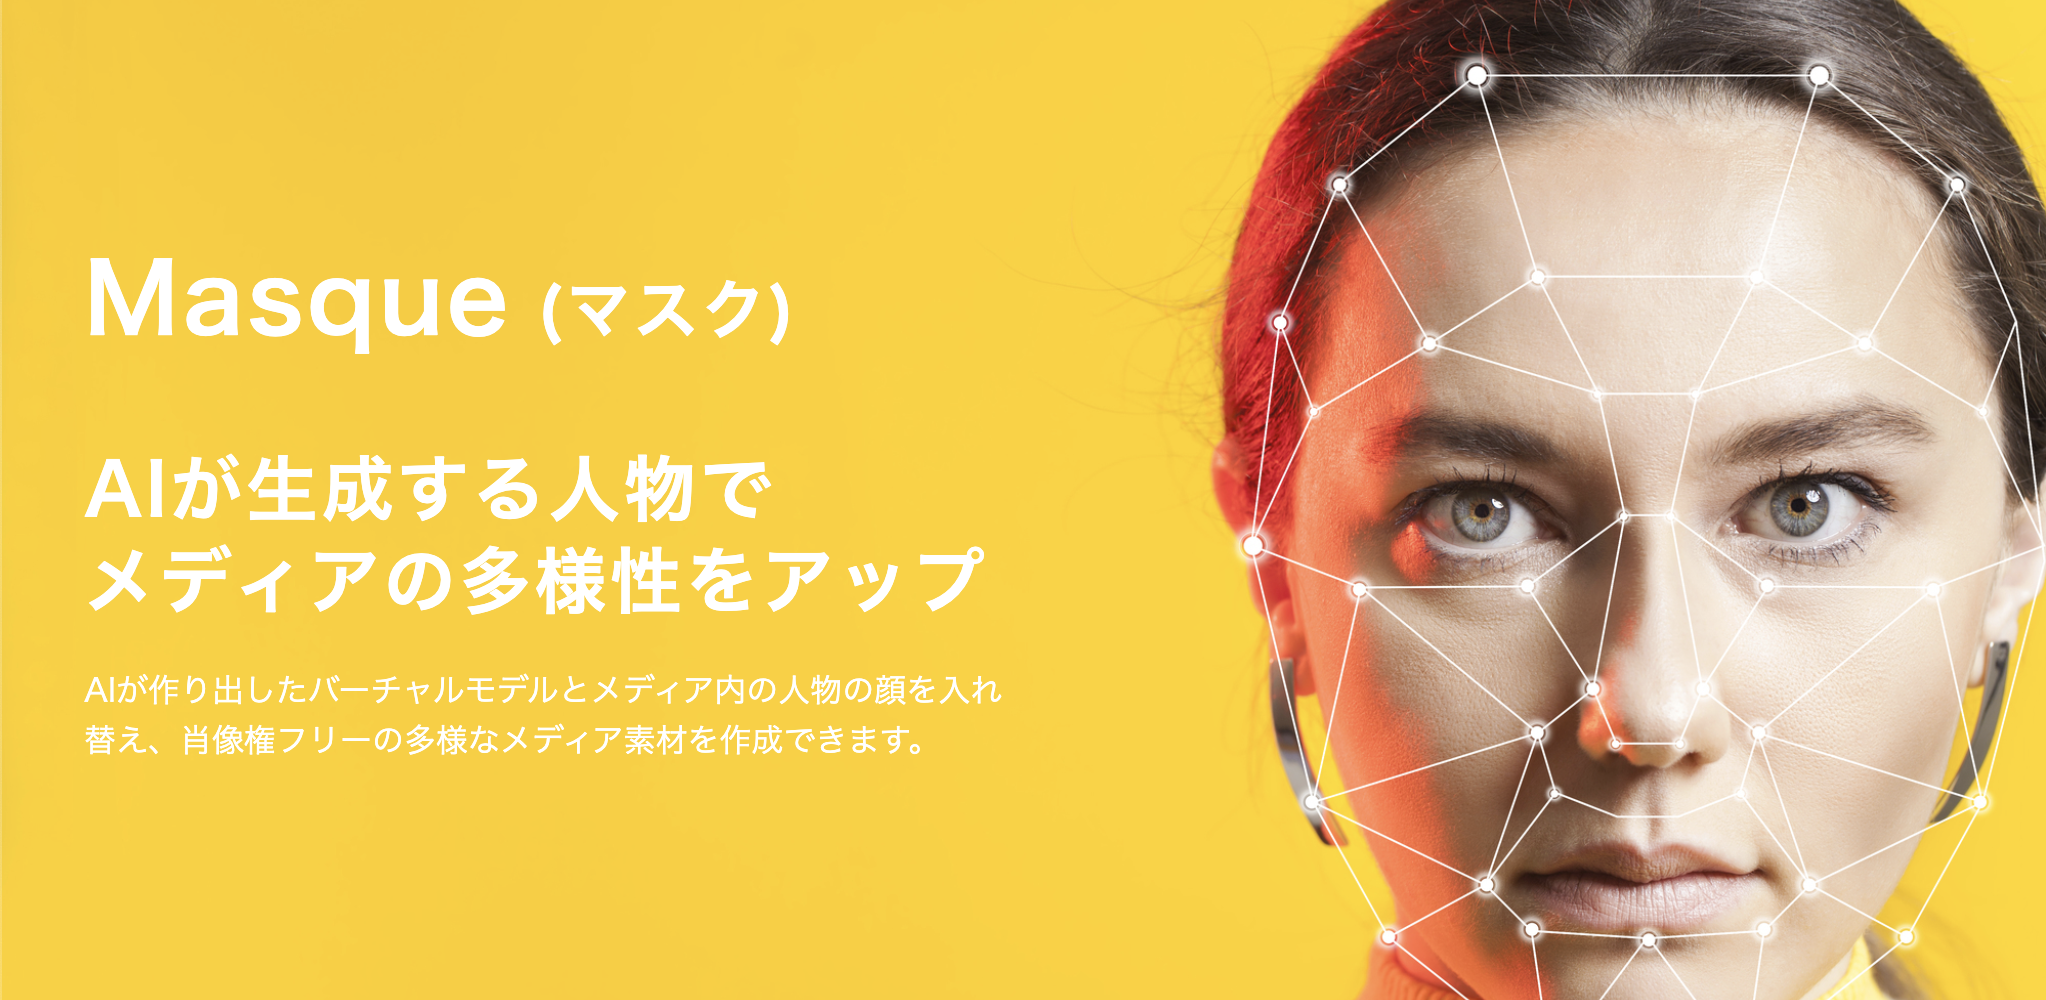 Masque (マスク) - AIが生成する人物で作る合成メディア -